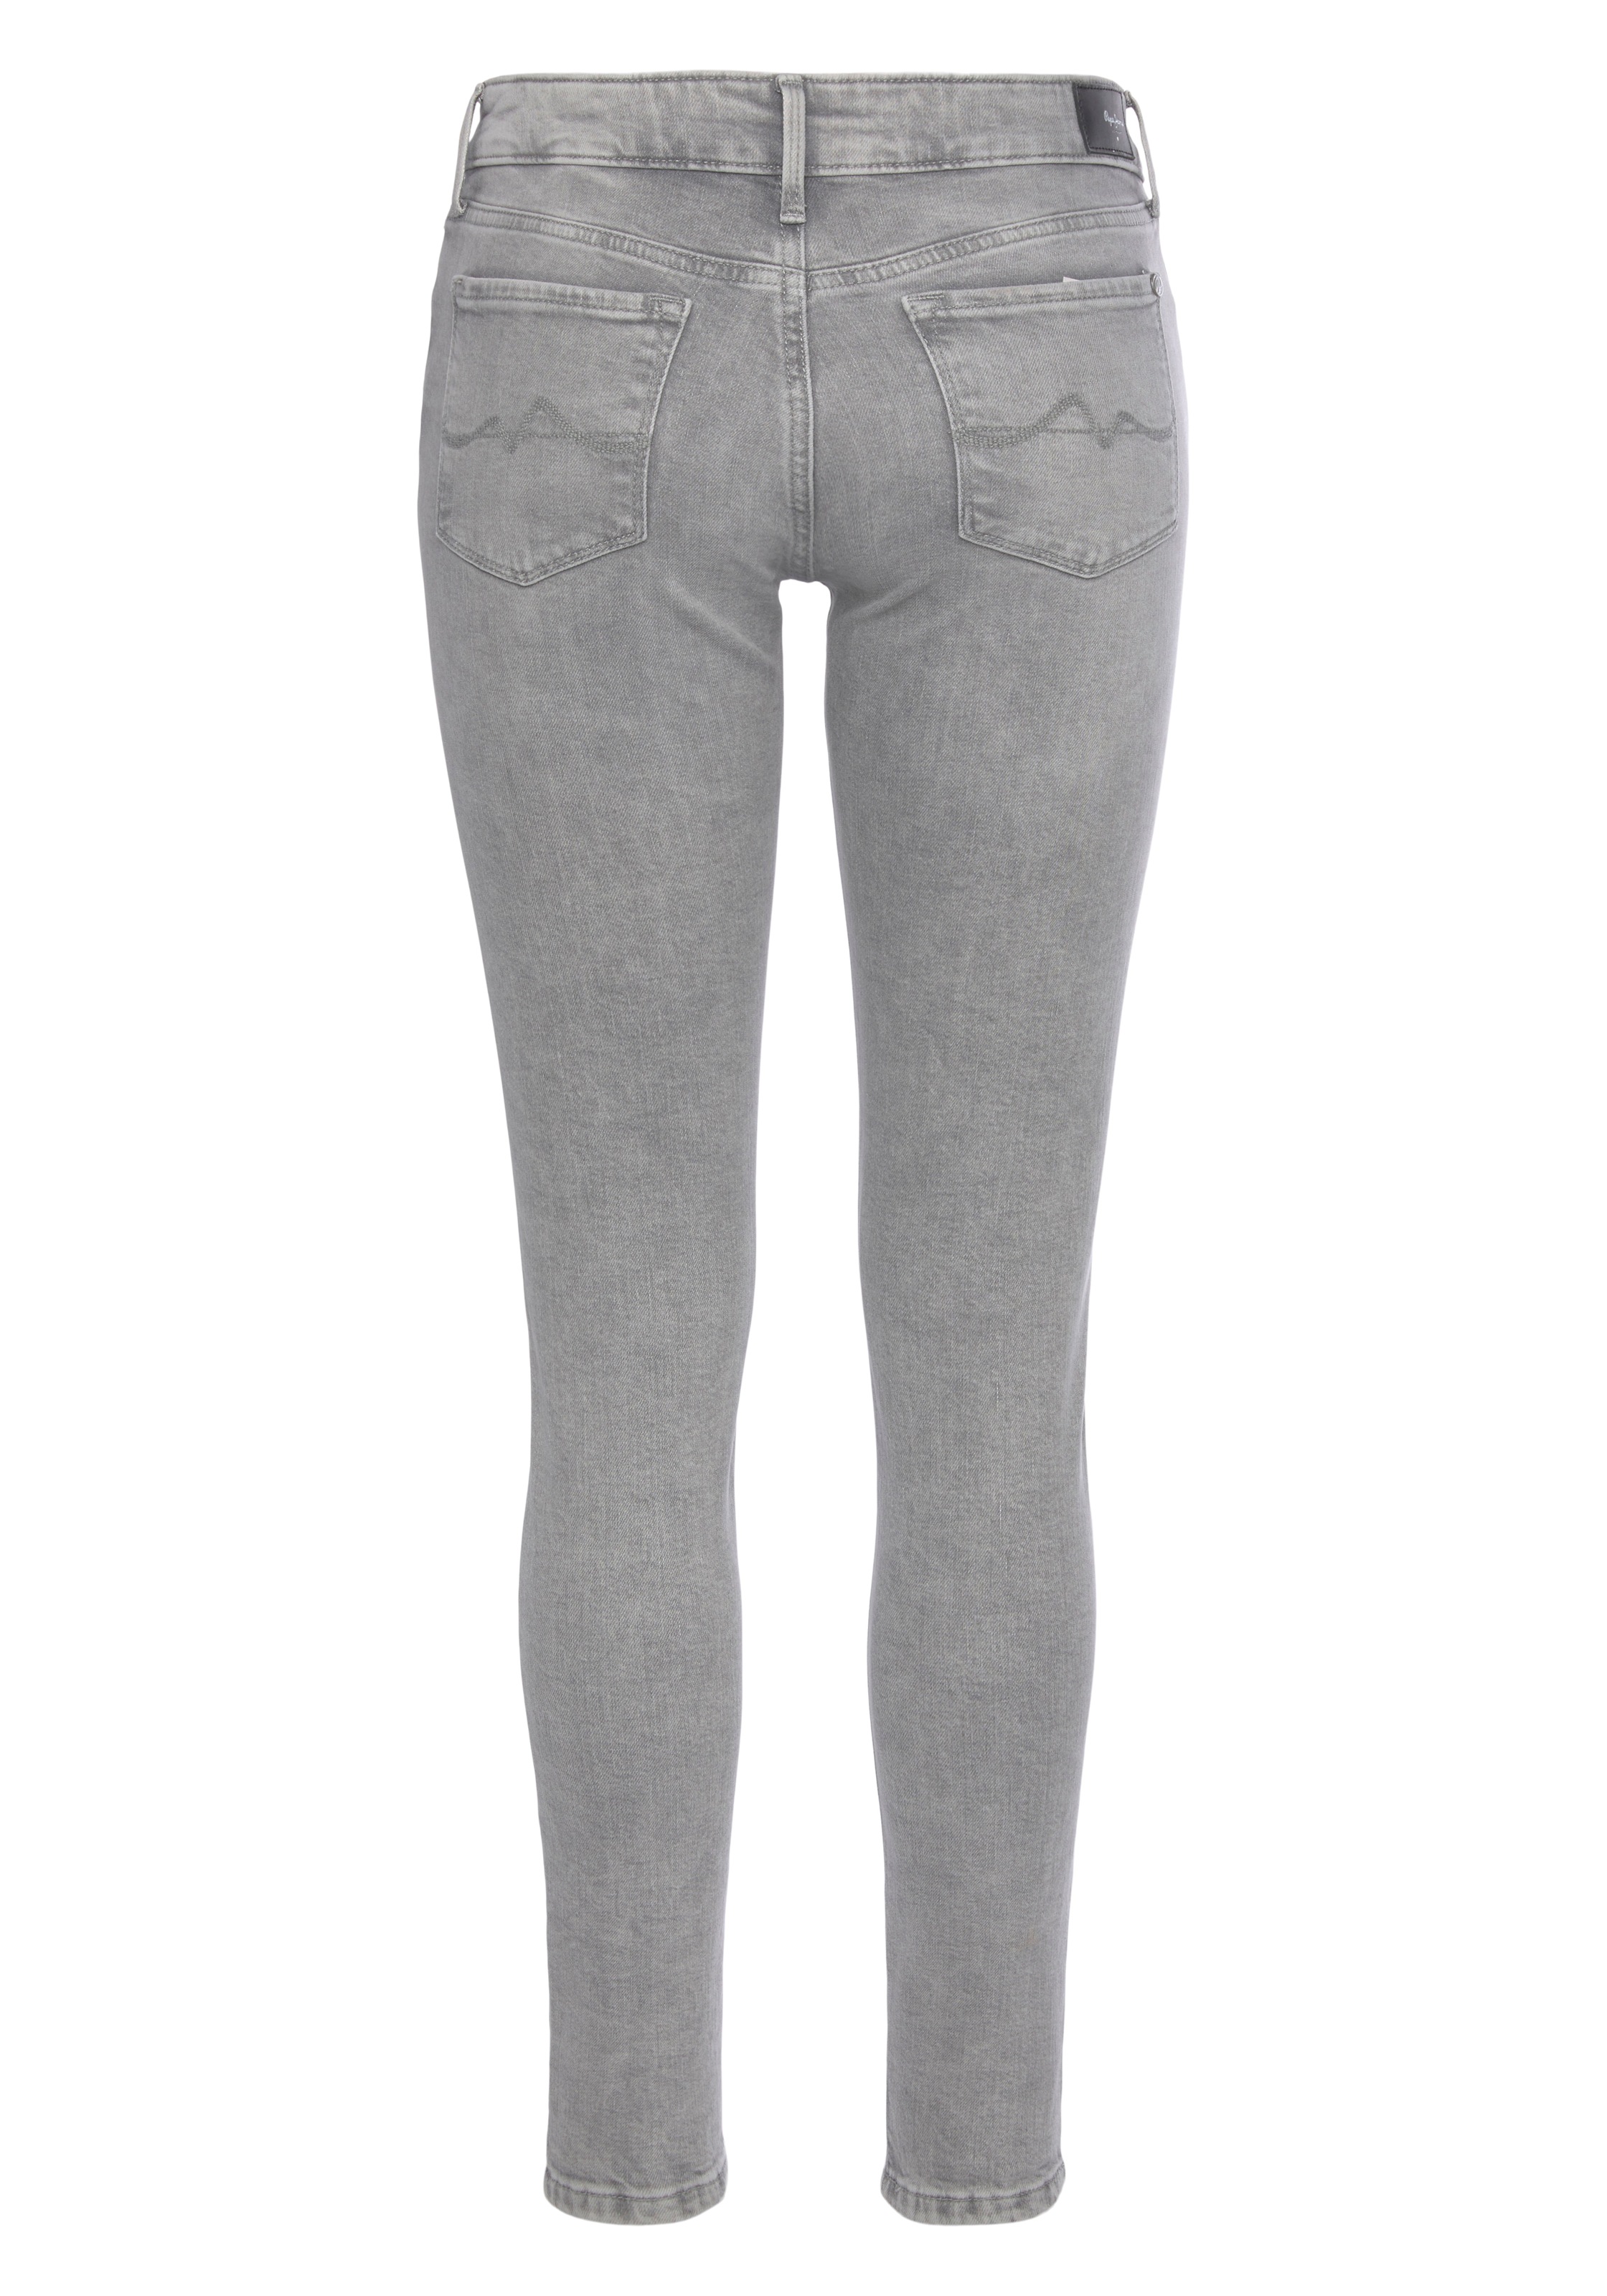 Pepe Jeans »SOHO«, kaufen Skinny-fit-Jeans im Stretch-Anteil und 5-Pocket-Stil Bund mit bequem 1-Knopf